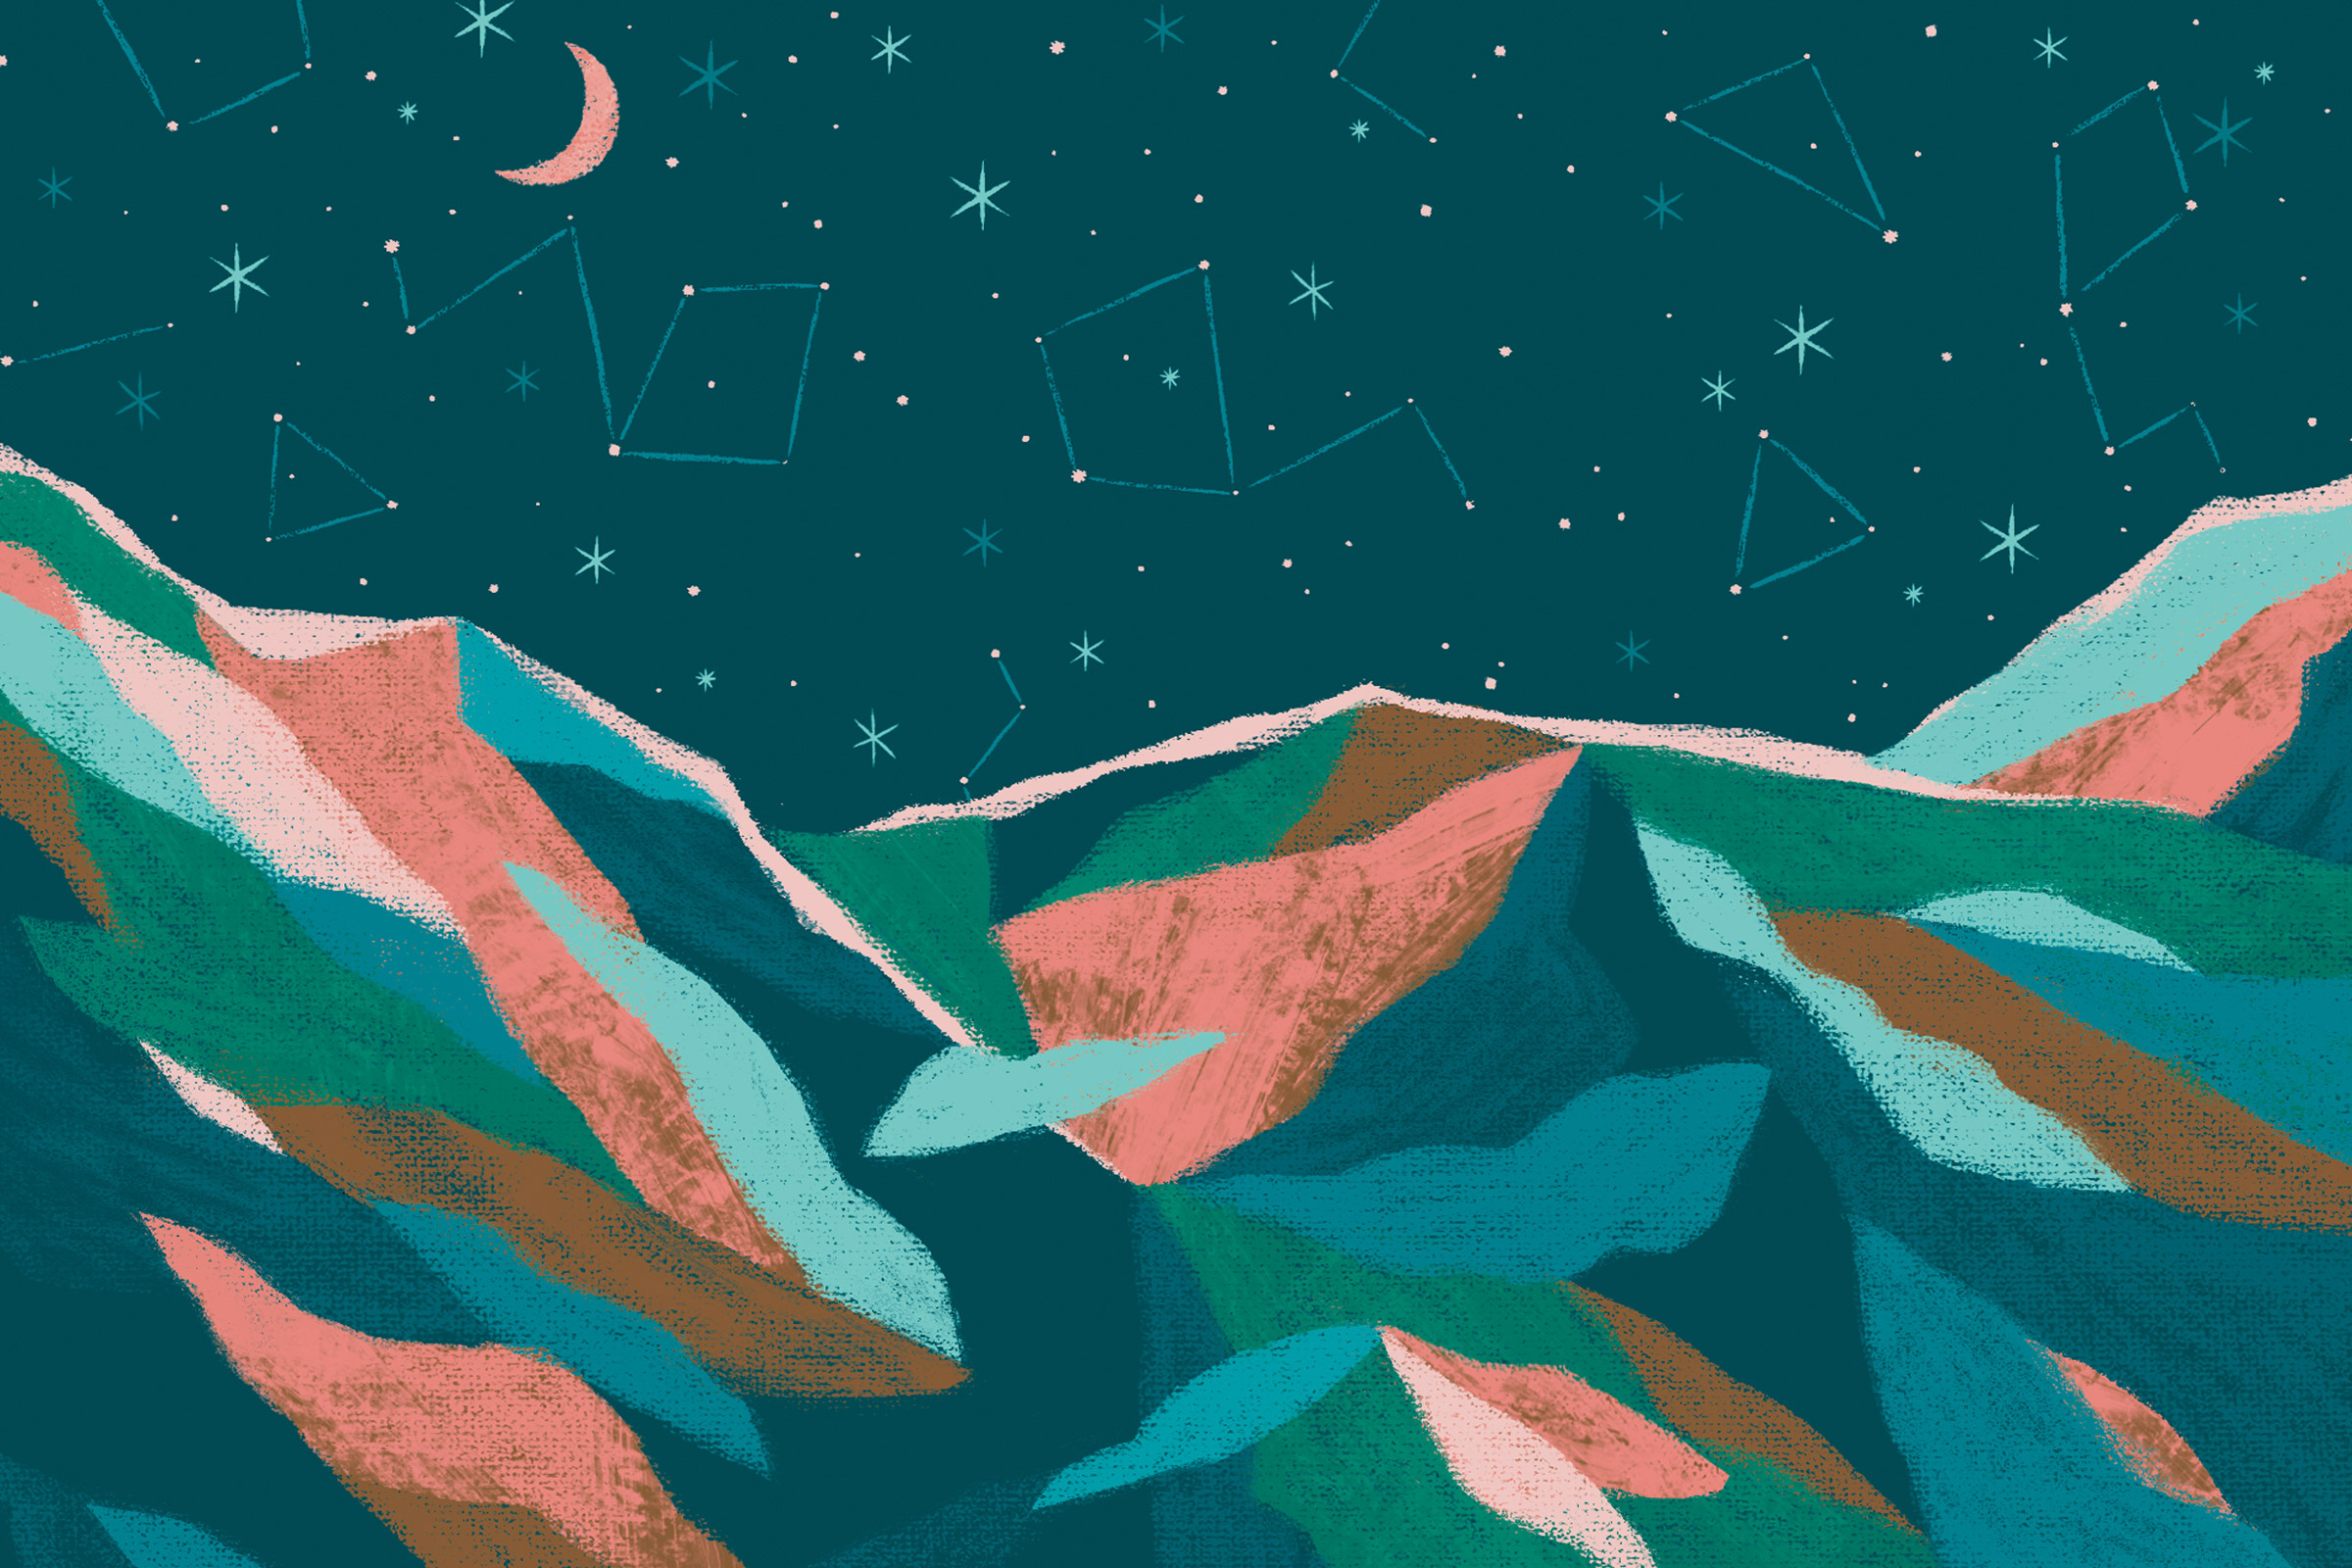 Constellation in Mountain sky illustration.